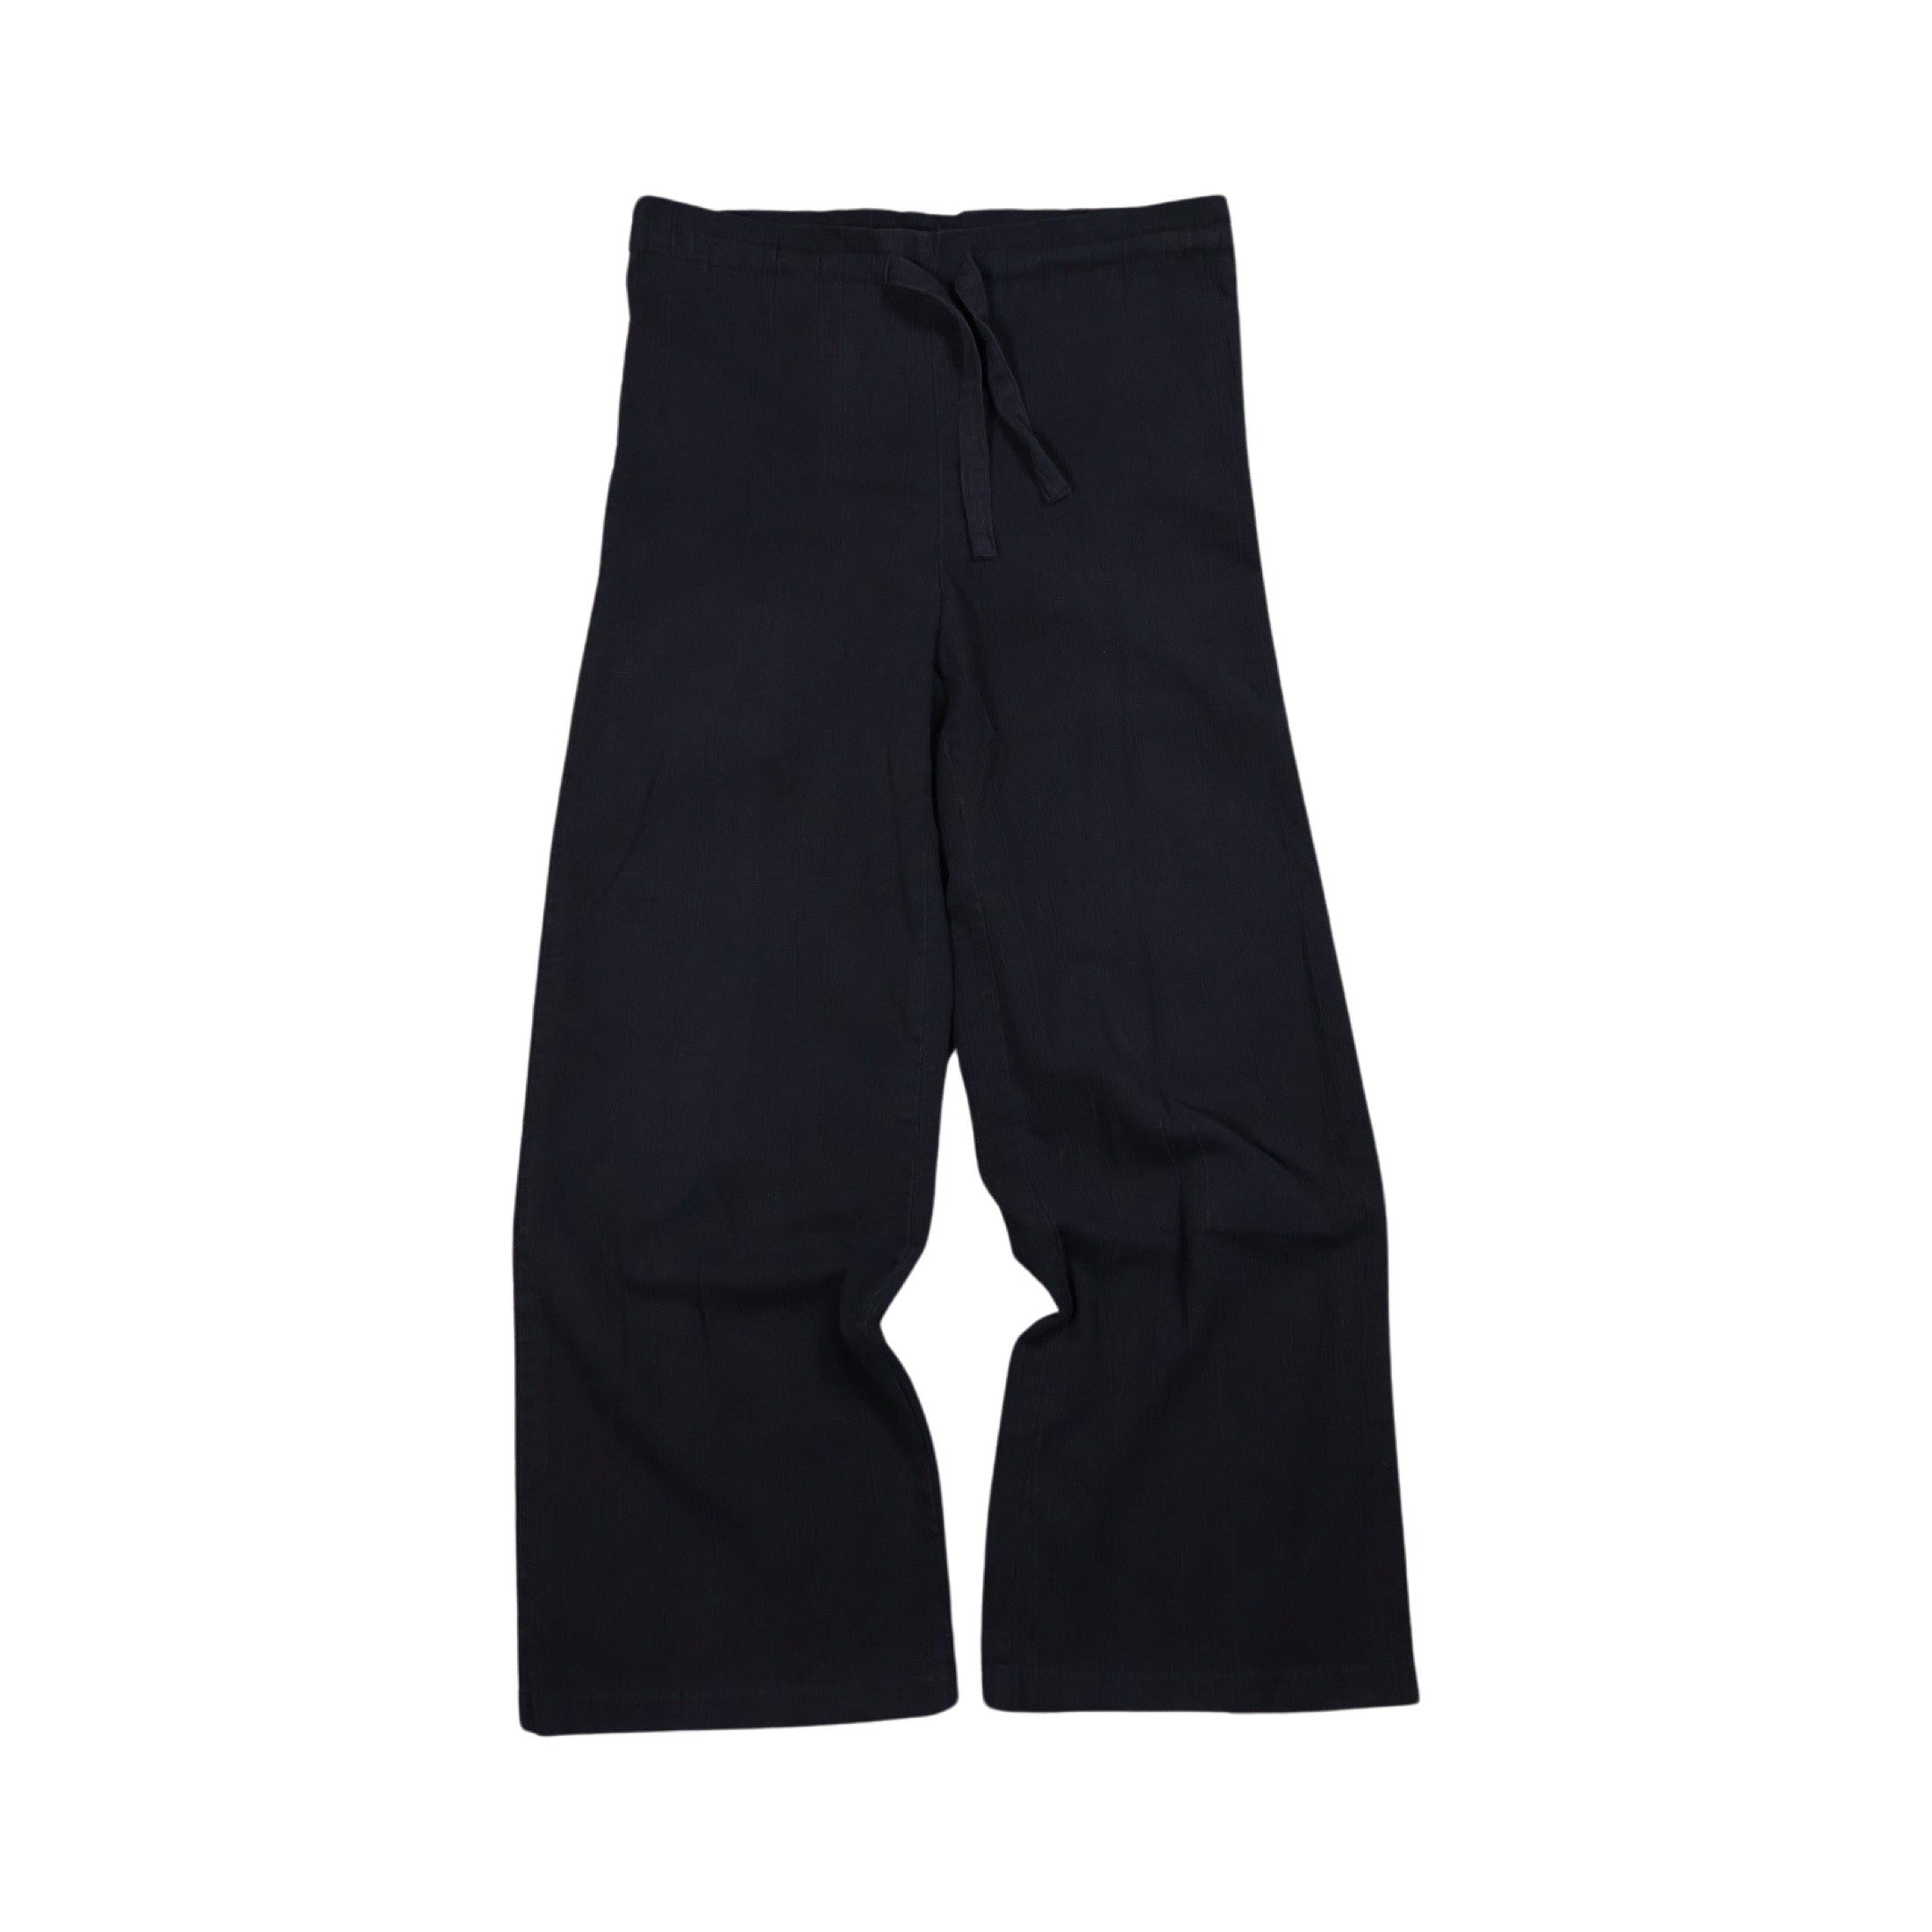 Black 70/80s Wide Leg Cotton Pants (34”)